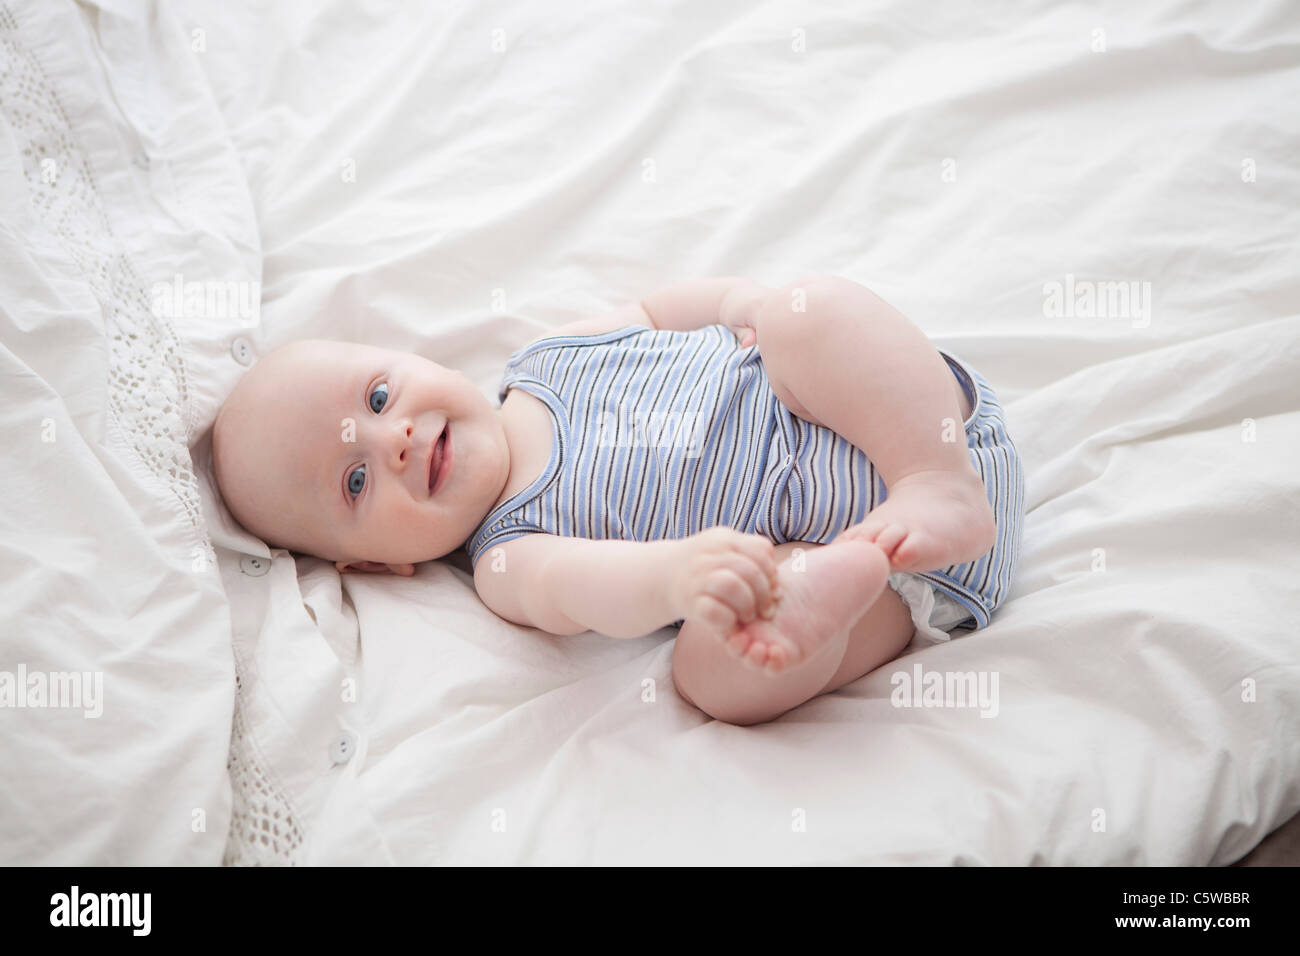 Germania - Monaco, (2-5 mesi) baby boy sul letto, ritratto Foto Stock